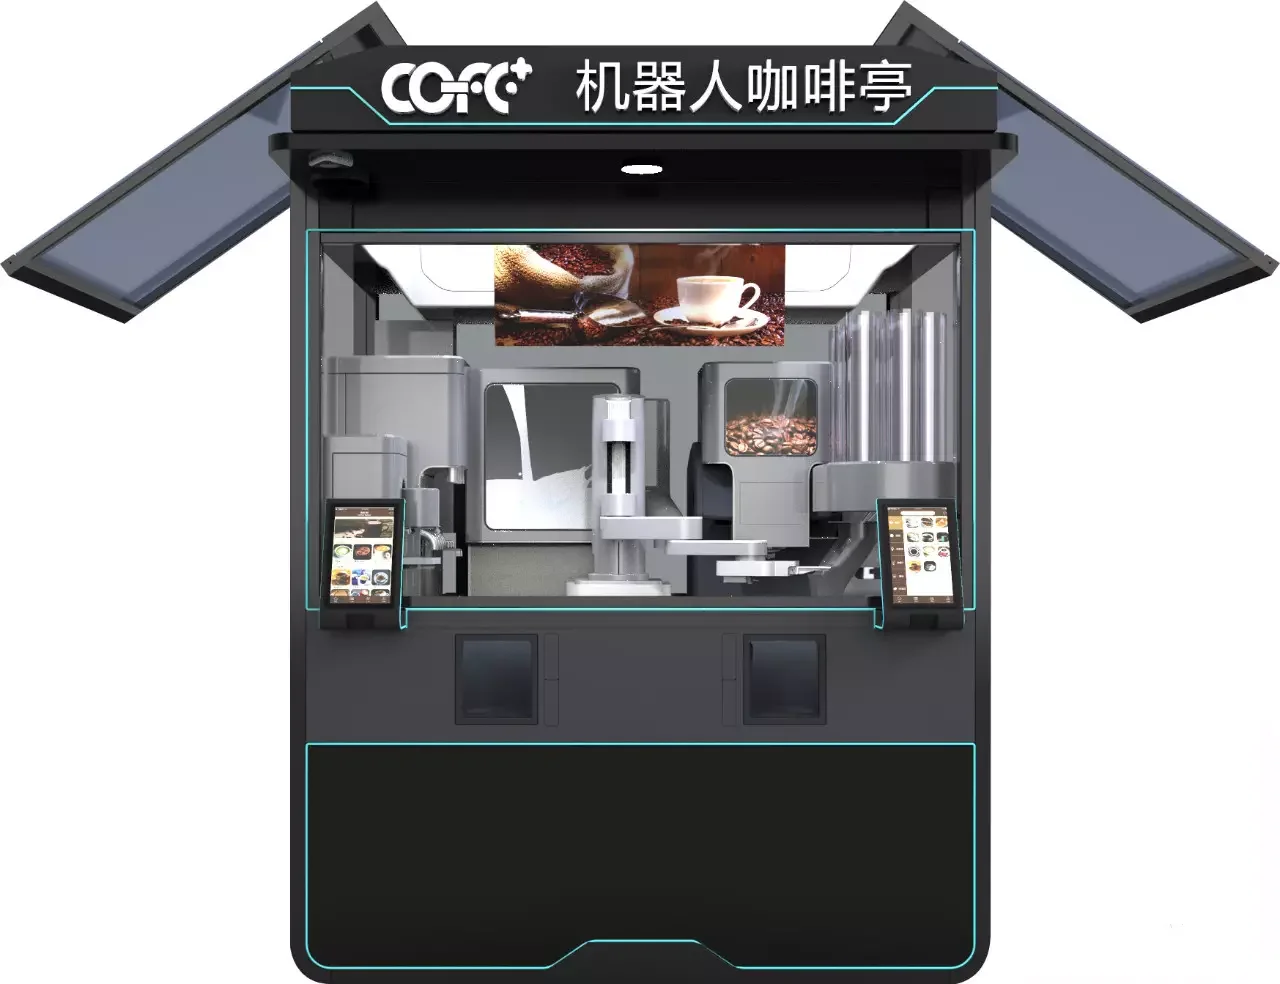 
Robot Coffee kiosk 